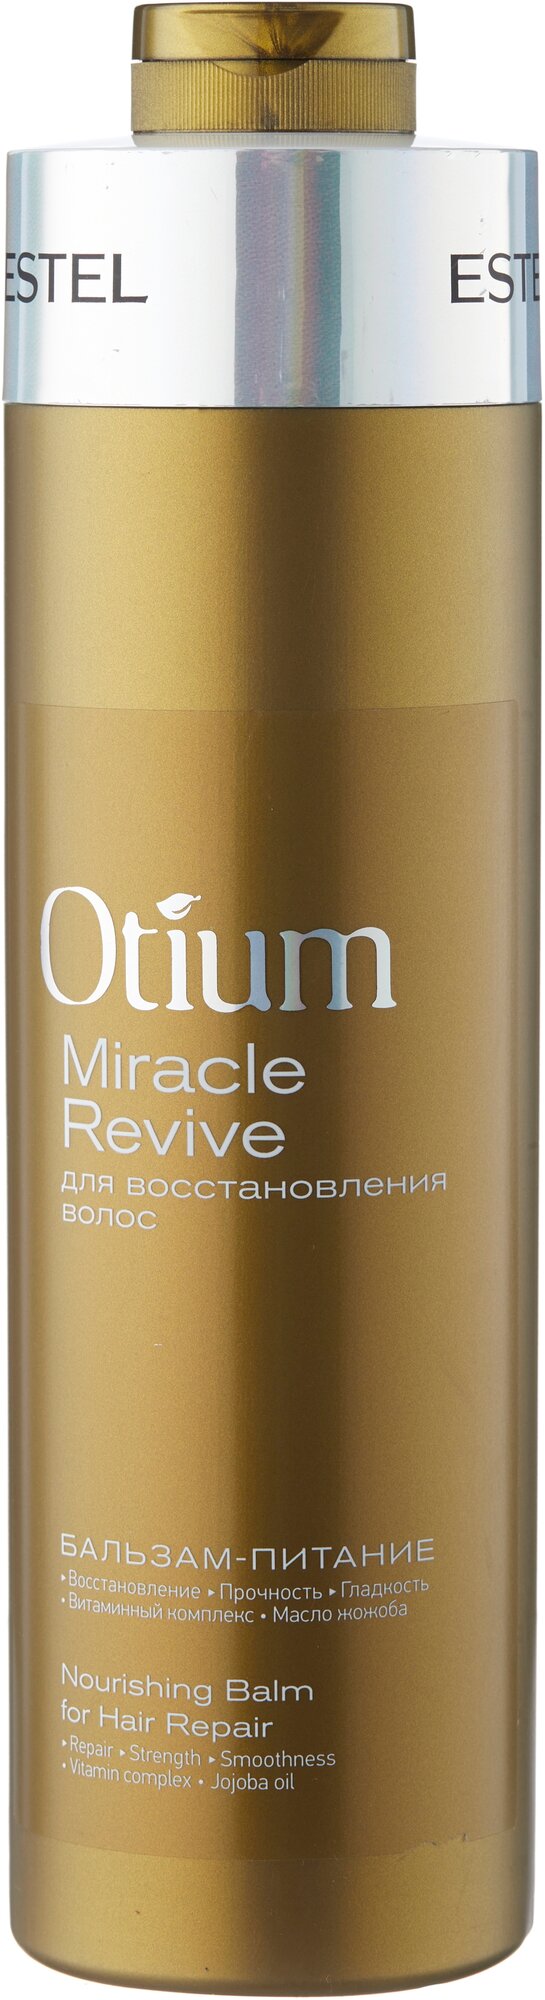 ESTEL бальзам-питание Otium Miracle Revive для восстановления волос, 1000 мл